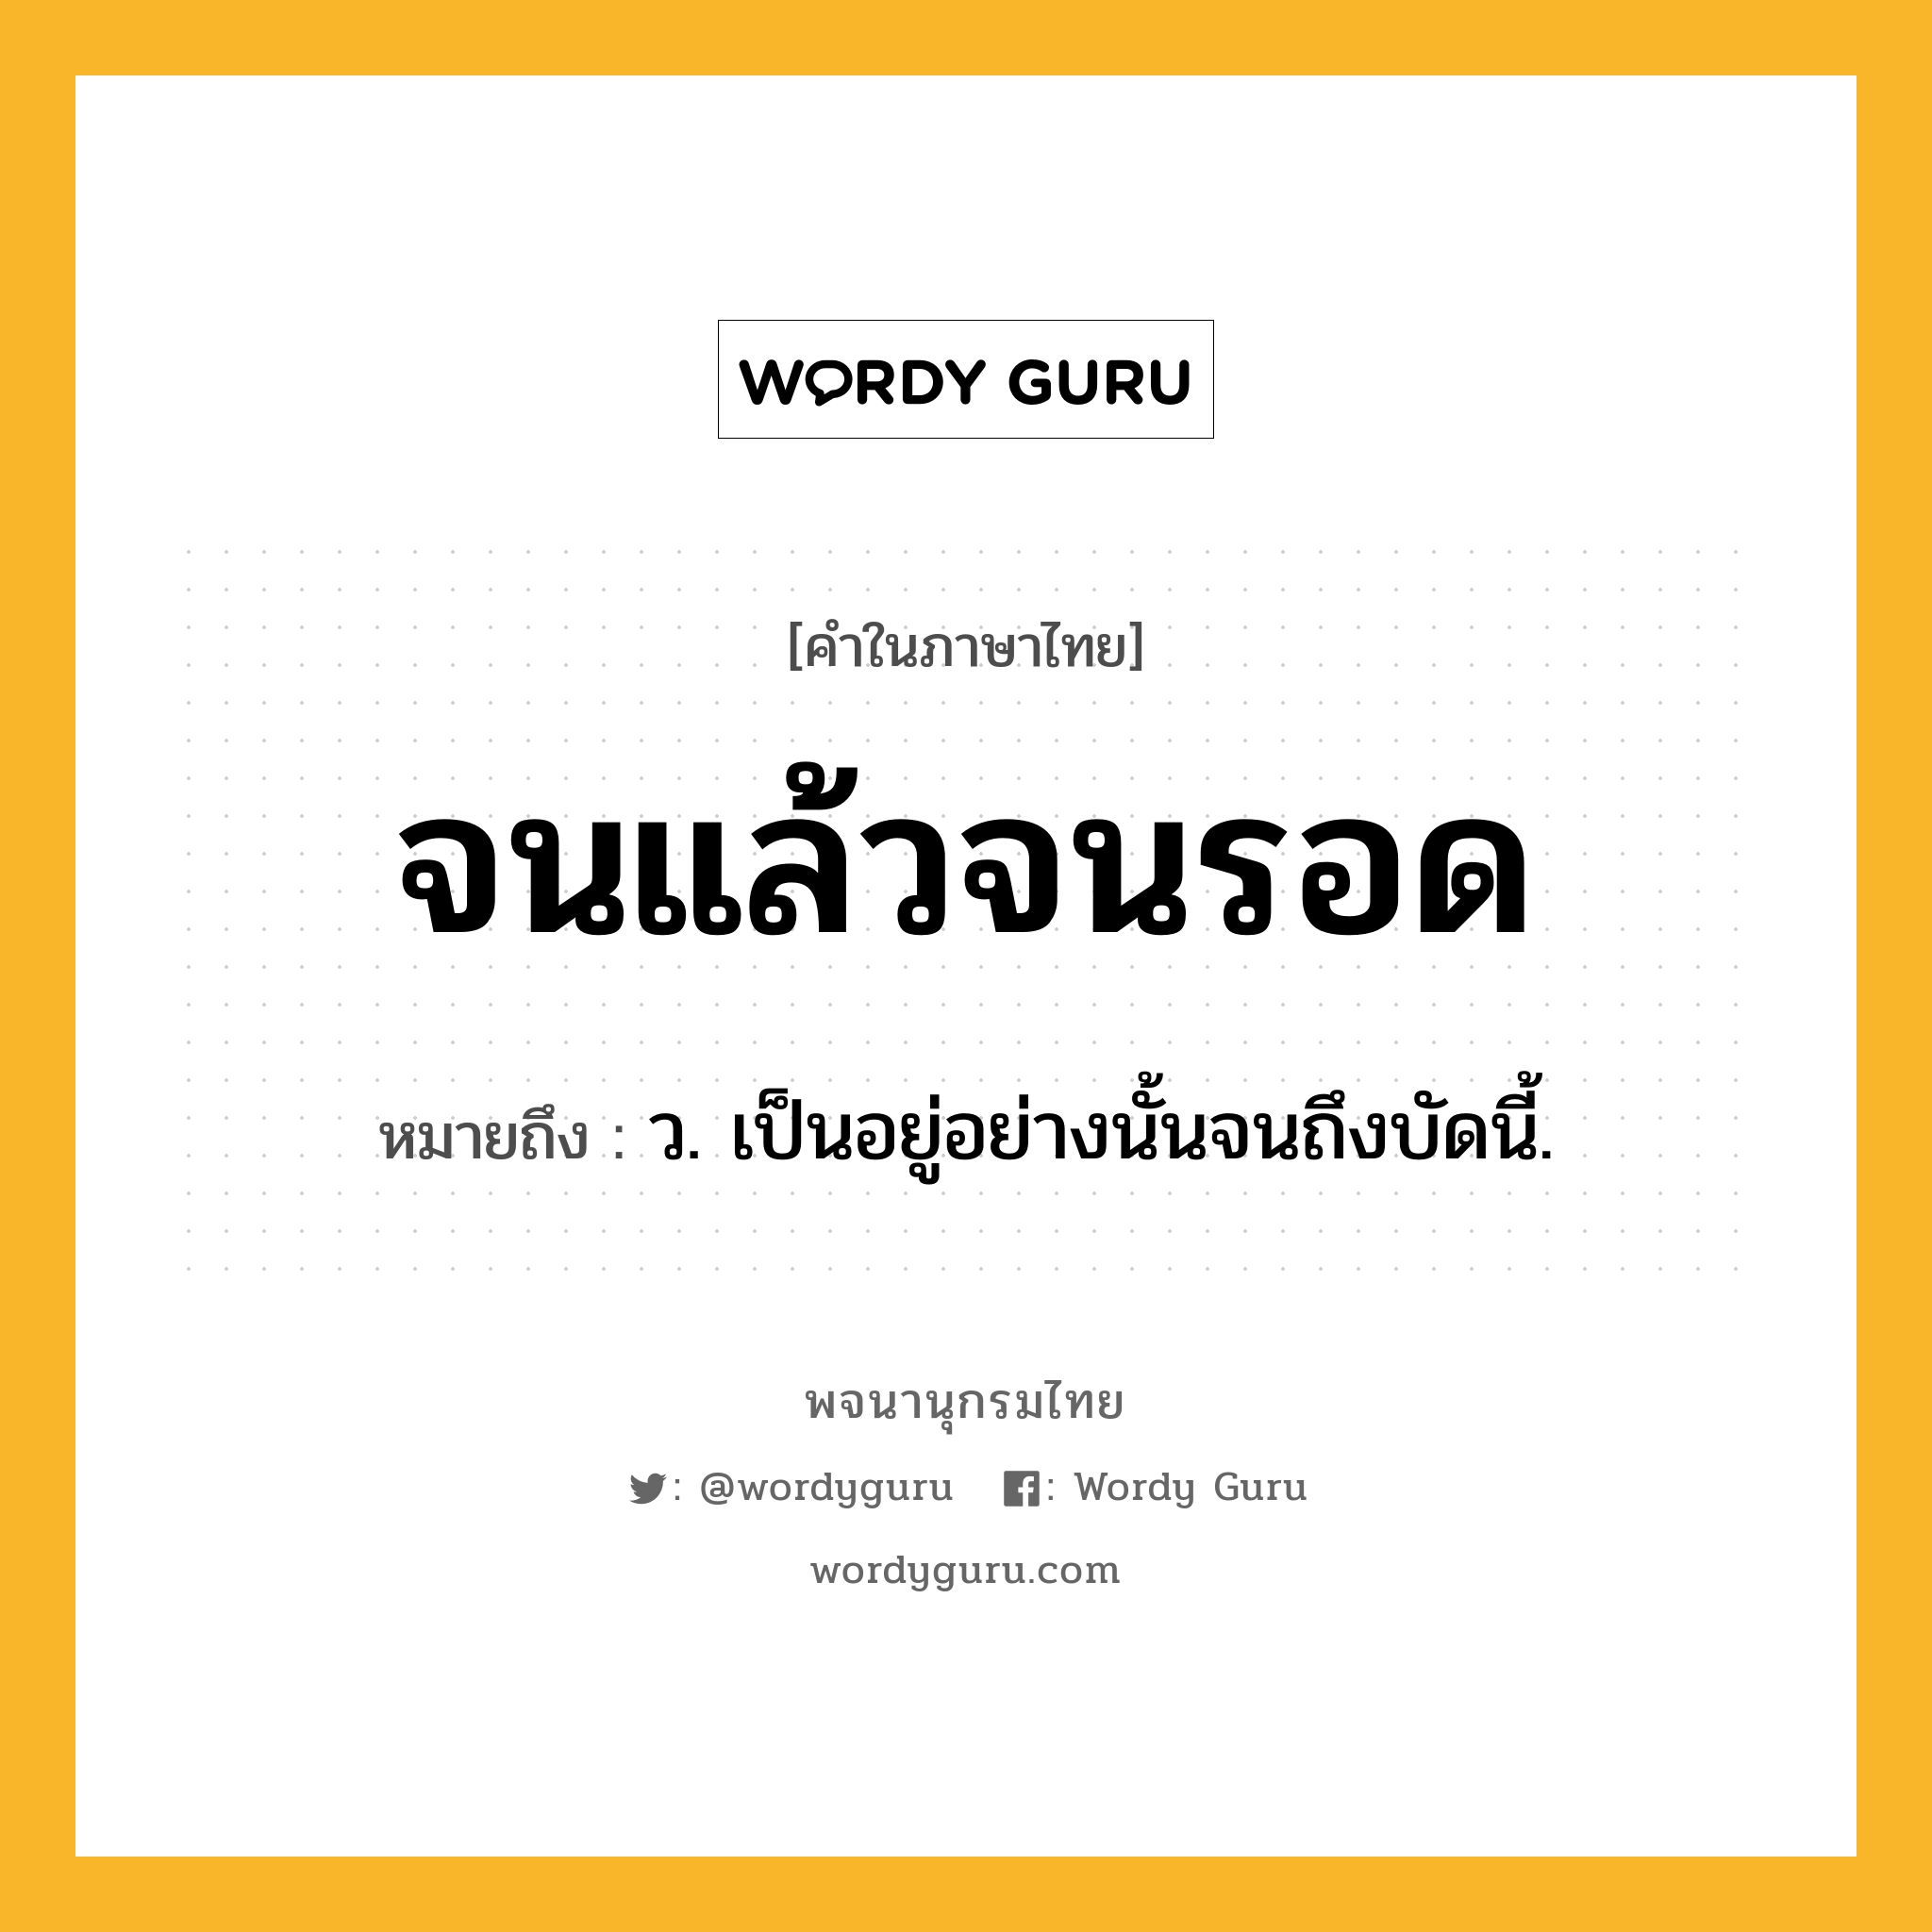 จนแล้วจนรอด ความหมาย หมายถึงอะไร?, คำในภาษาไทย จนแล้วจนรอด หมายถึง ว. เป็นอยู่อย่างนั้นจนถึงบัดนี้.